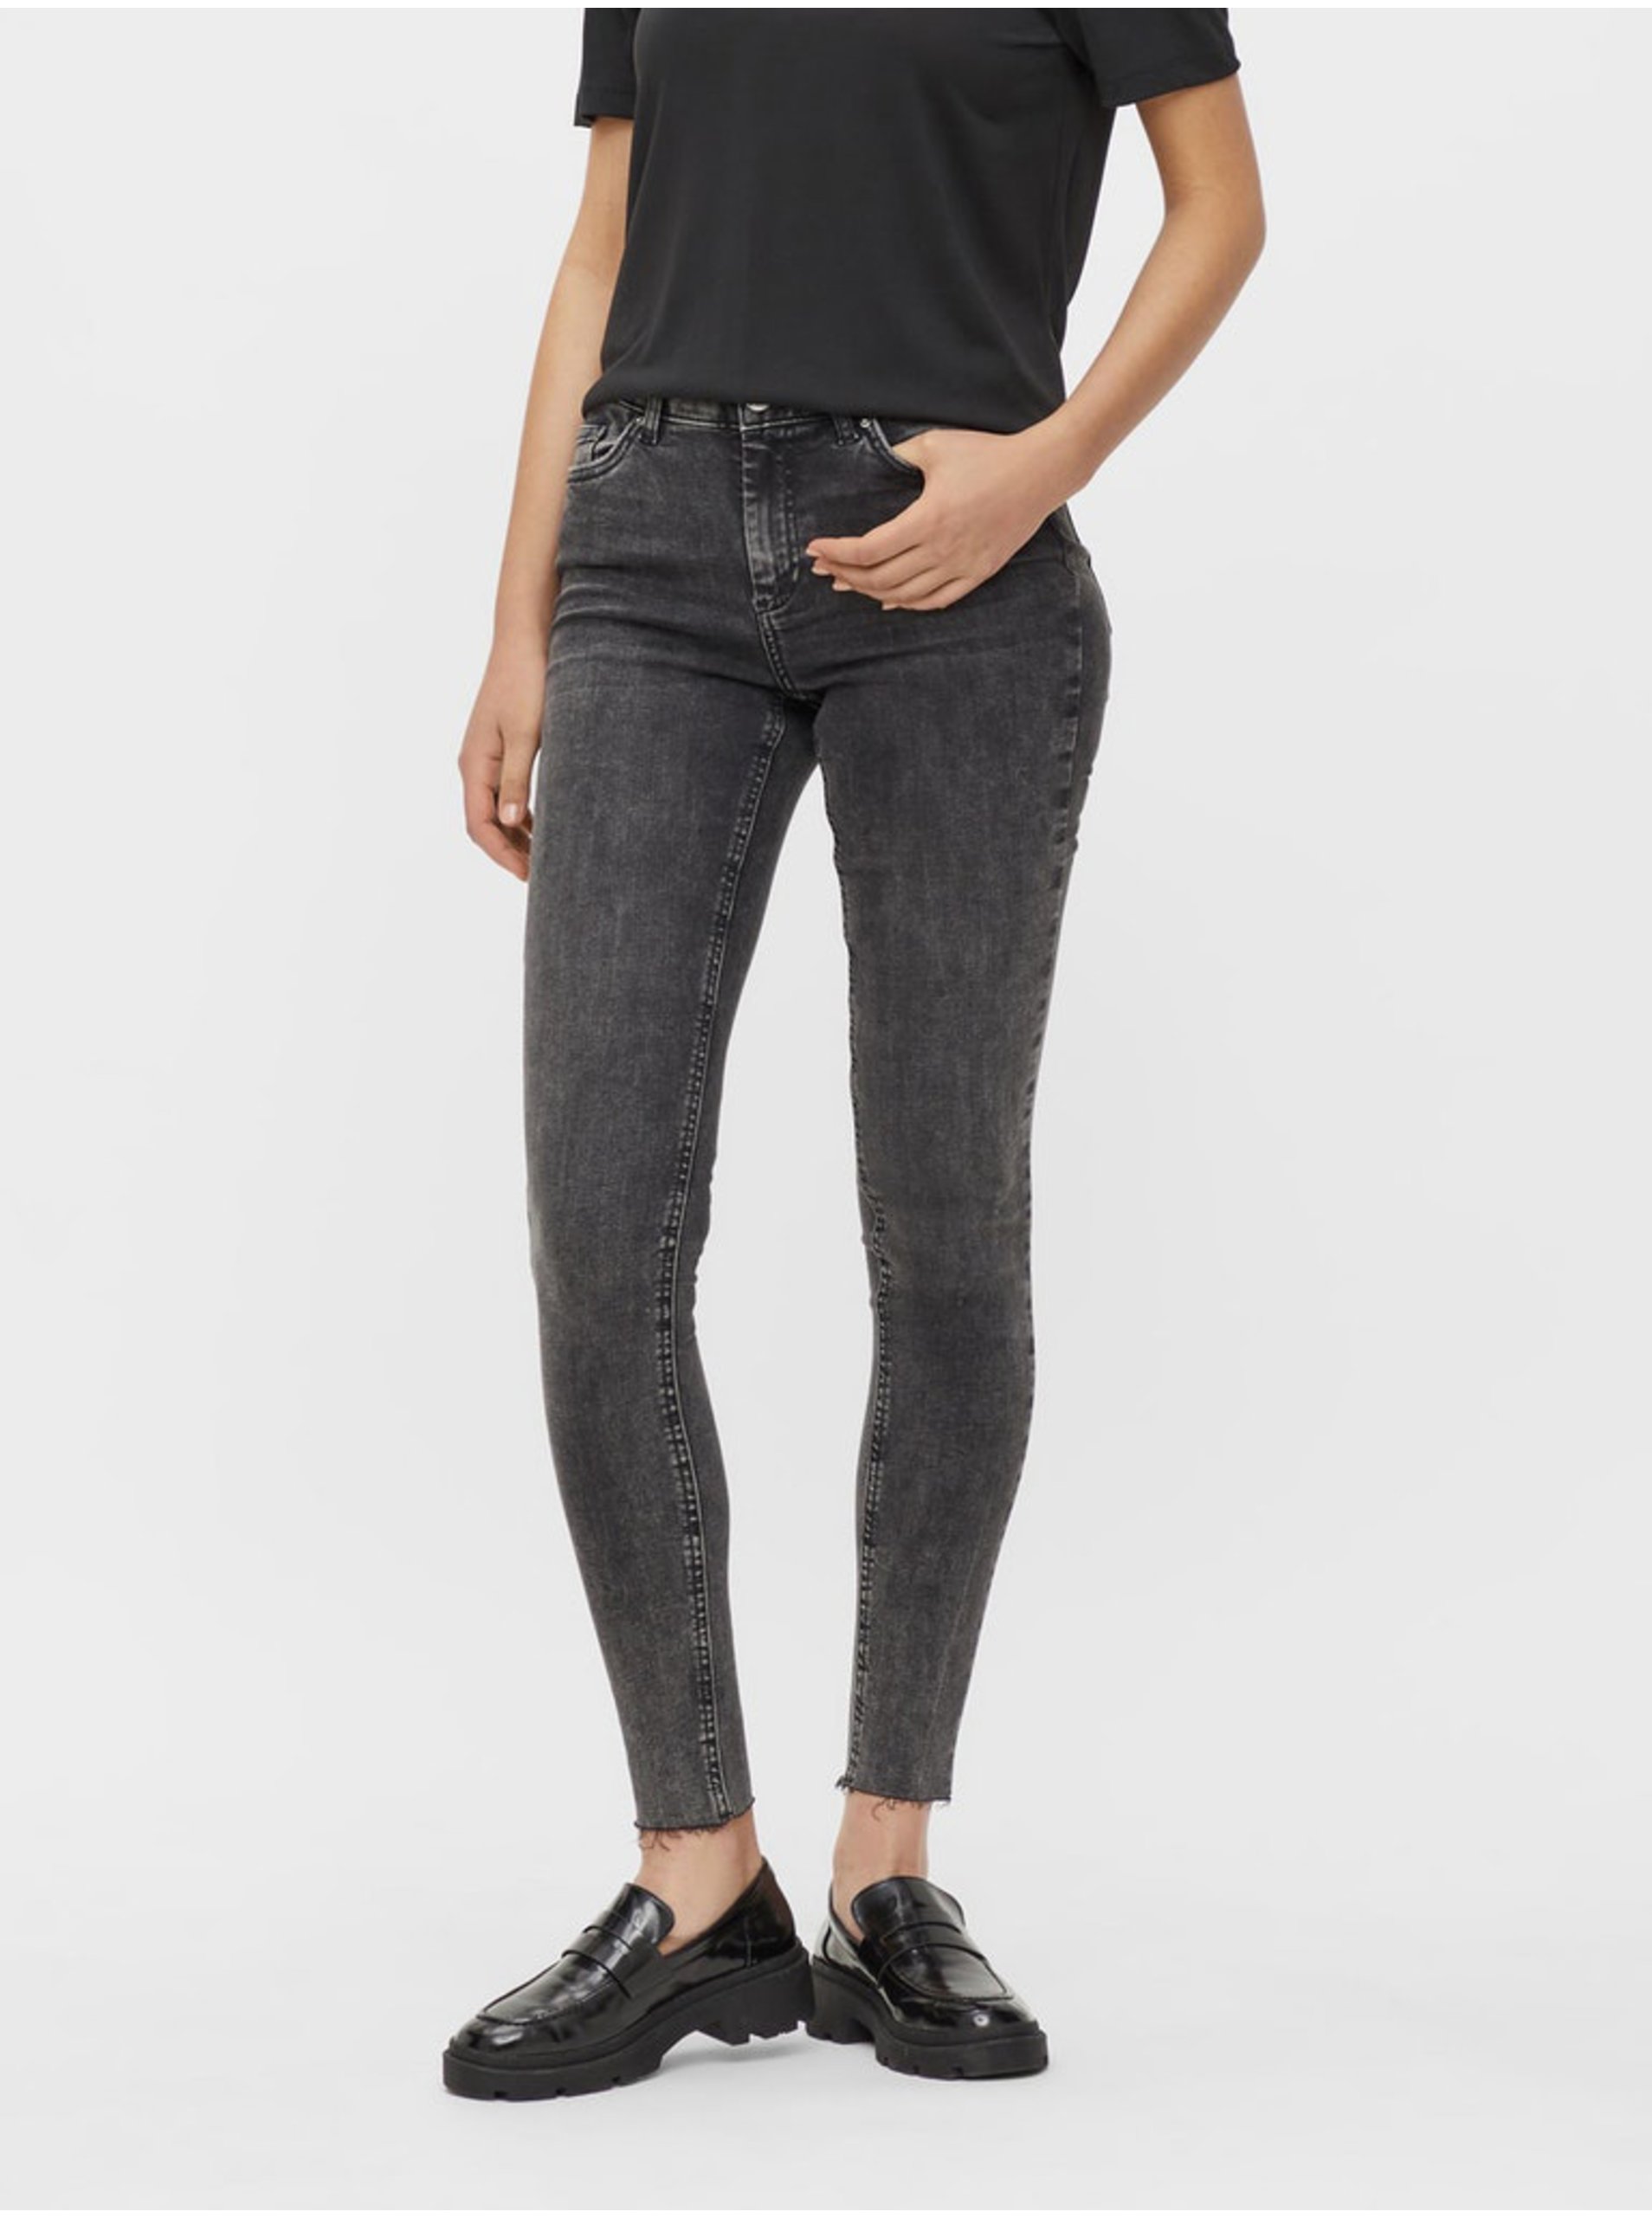 E-shop Tmavě šedé skinny fit džíny Pieces Delly